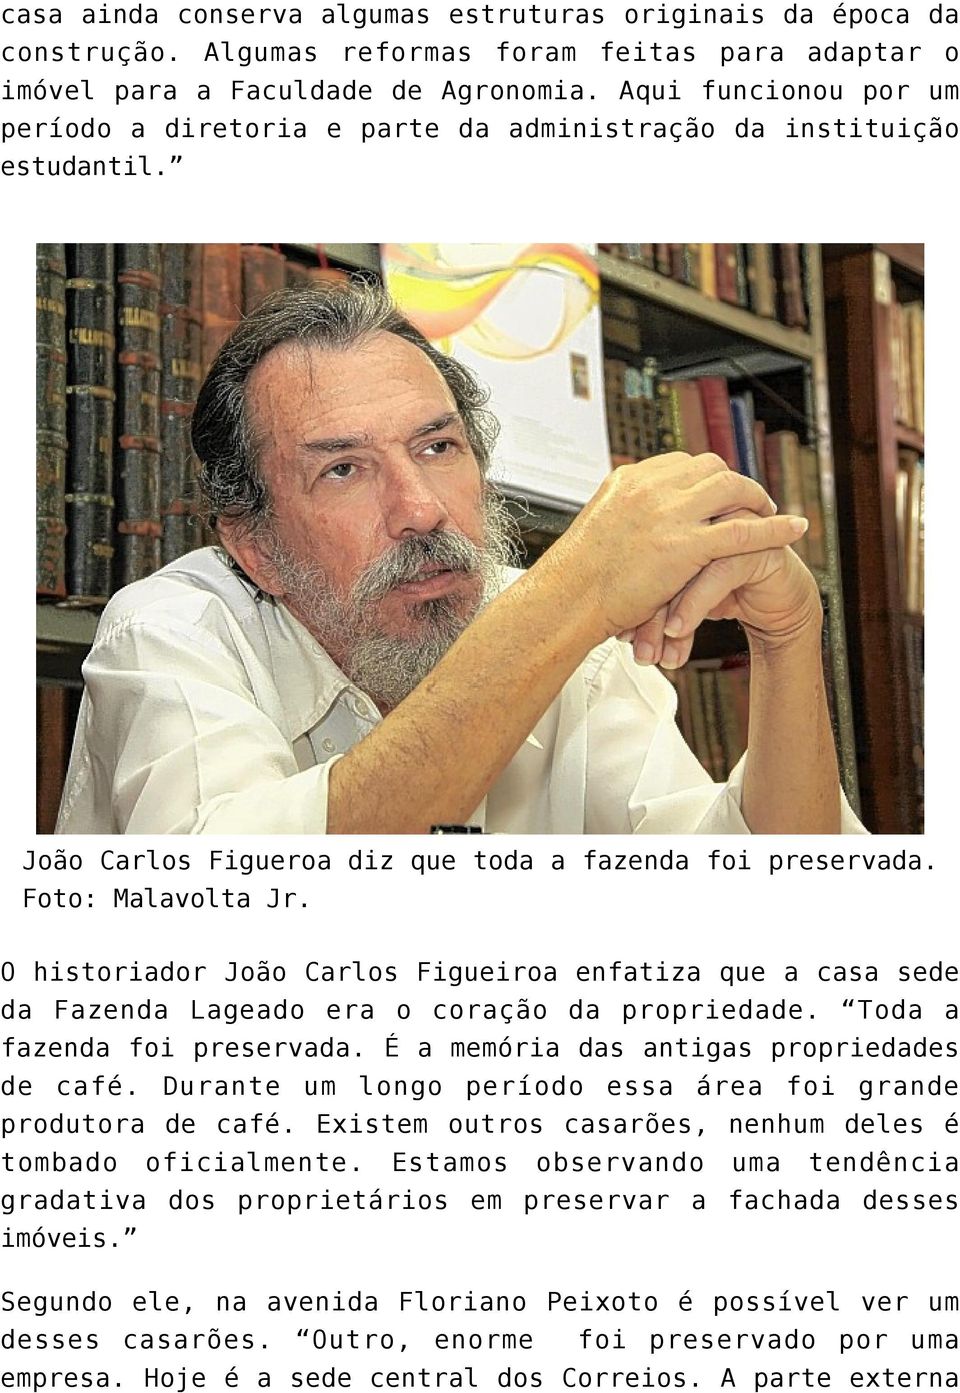 O historiador João Carlos Figueiroa enfatiza que a casa sede da Fazenda Lageado era o coração da propriedade. Toda a fazenda foi preservada. É a memória das antigas propriedades de café.